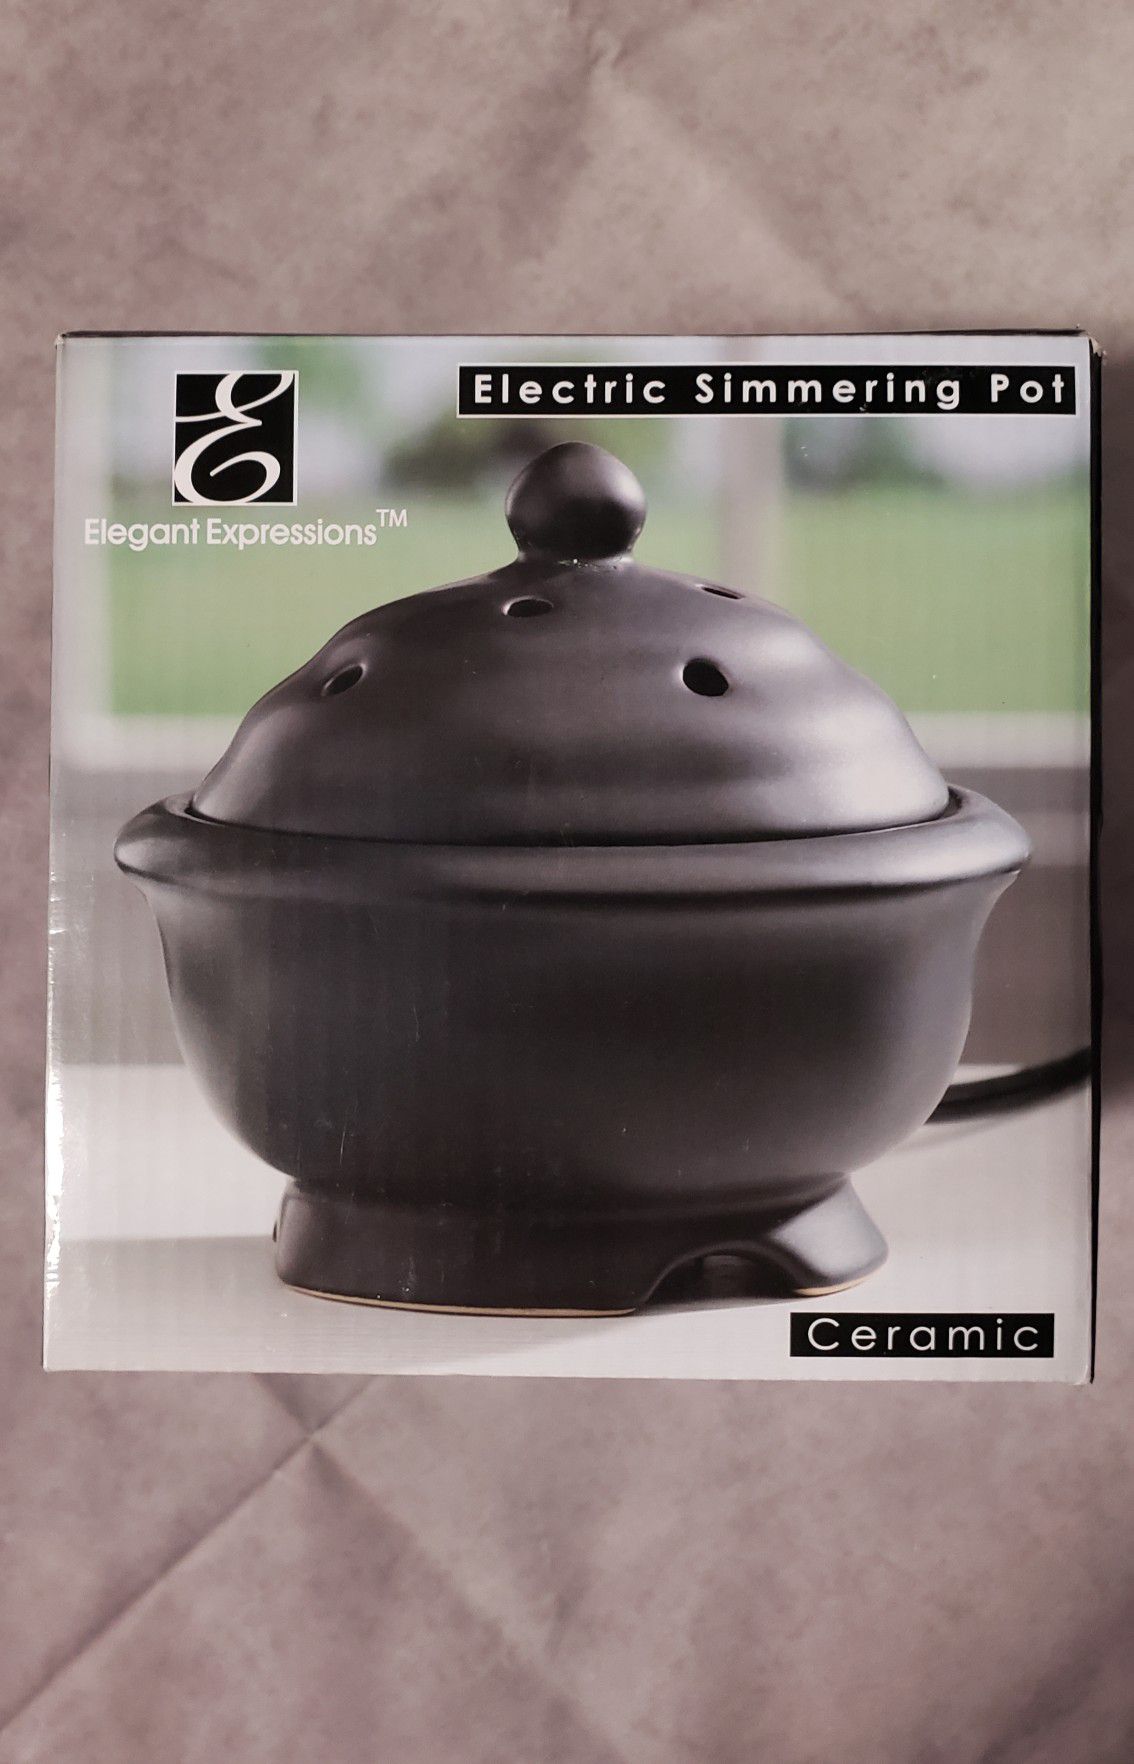 Electric Potpourri Simmering Pot- Vintage Ceramic Black Electric Simmering  Pot NEVER USED in Original Box!